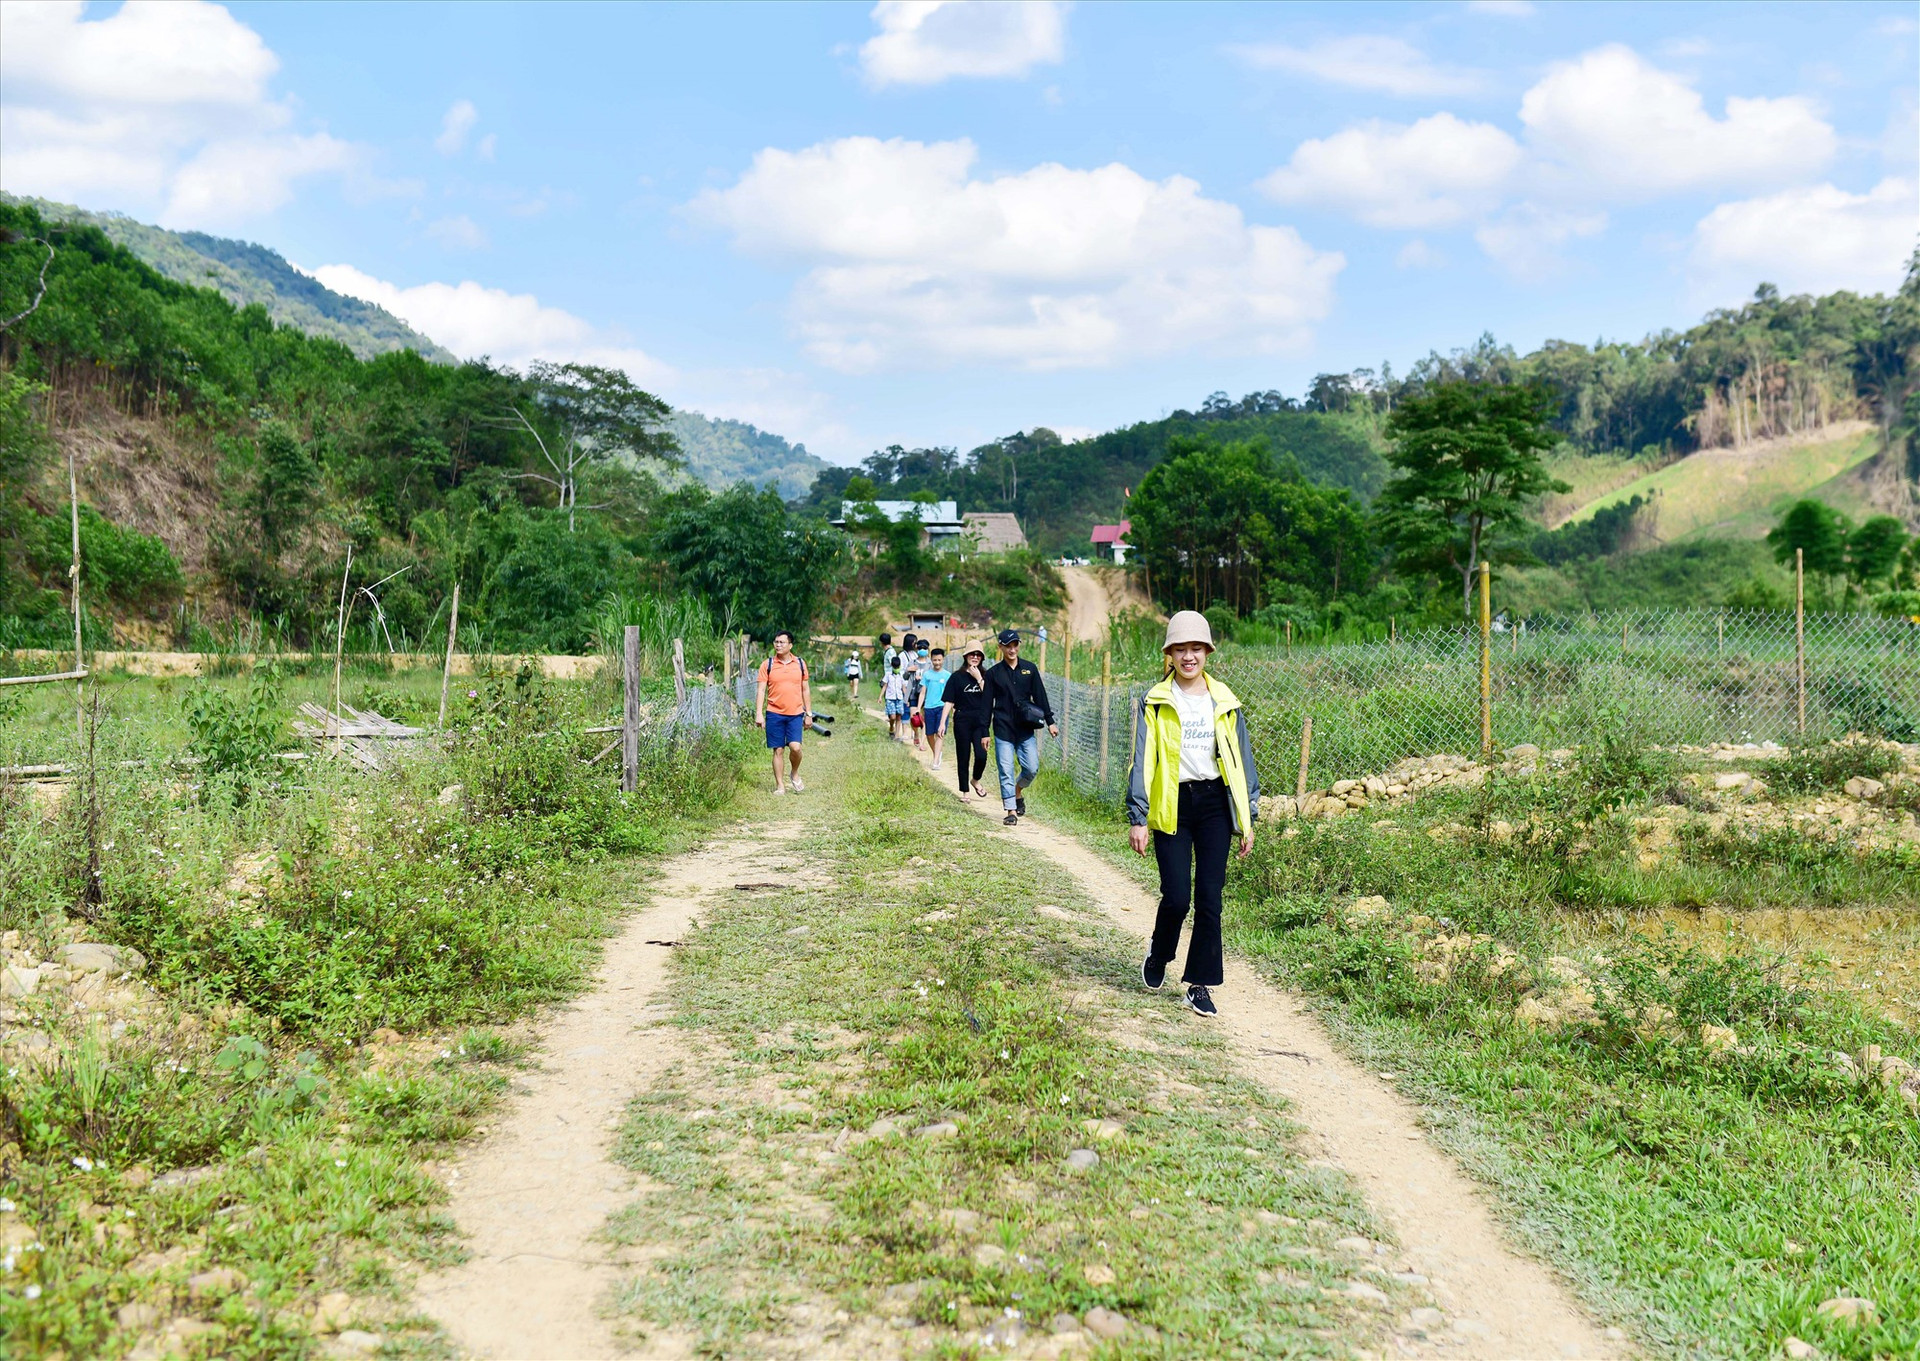 Hầu hết điểm du lịch cộng đồng ở vùng cao Quảng Nam đã hình thành được hợp tác xã, tổ hợp tác để chia sẻ hài hòa lợi ích, tạo sự đồng bộ trong việc phát triển du lịch. Ảnh: Q.T